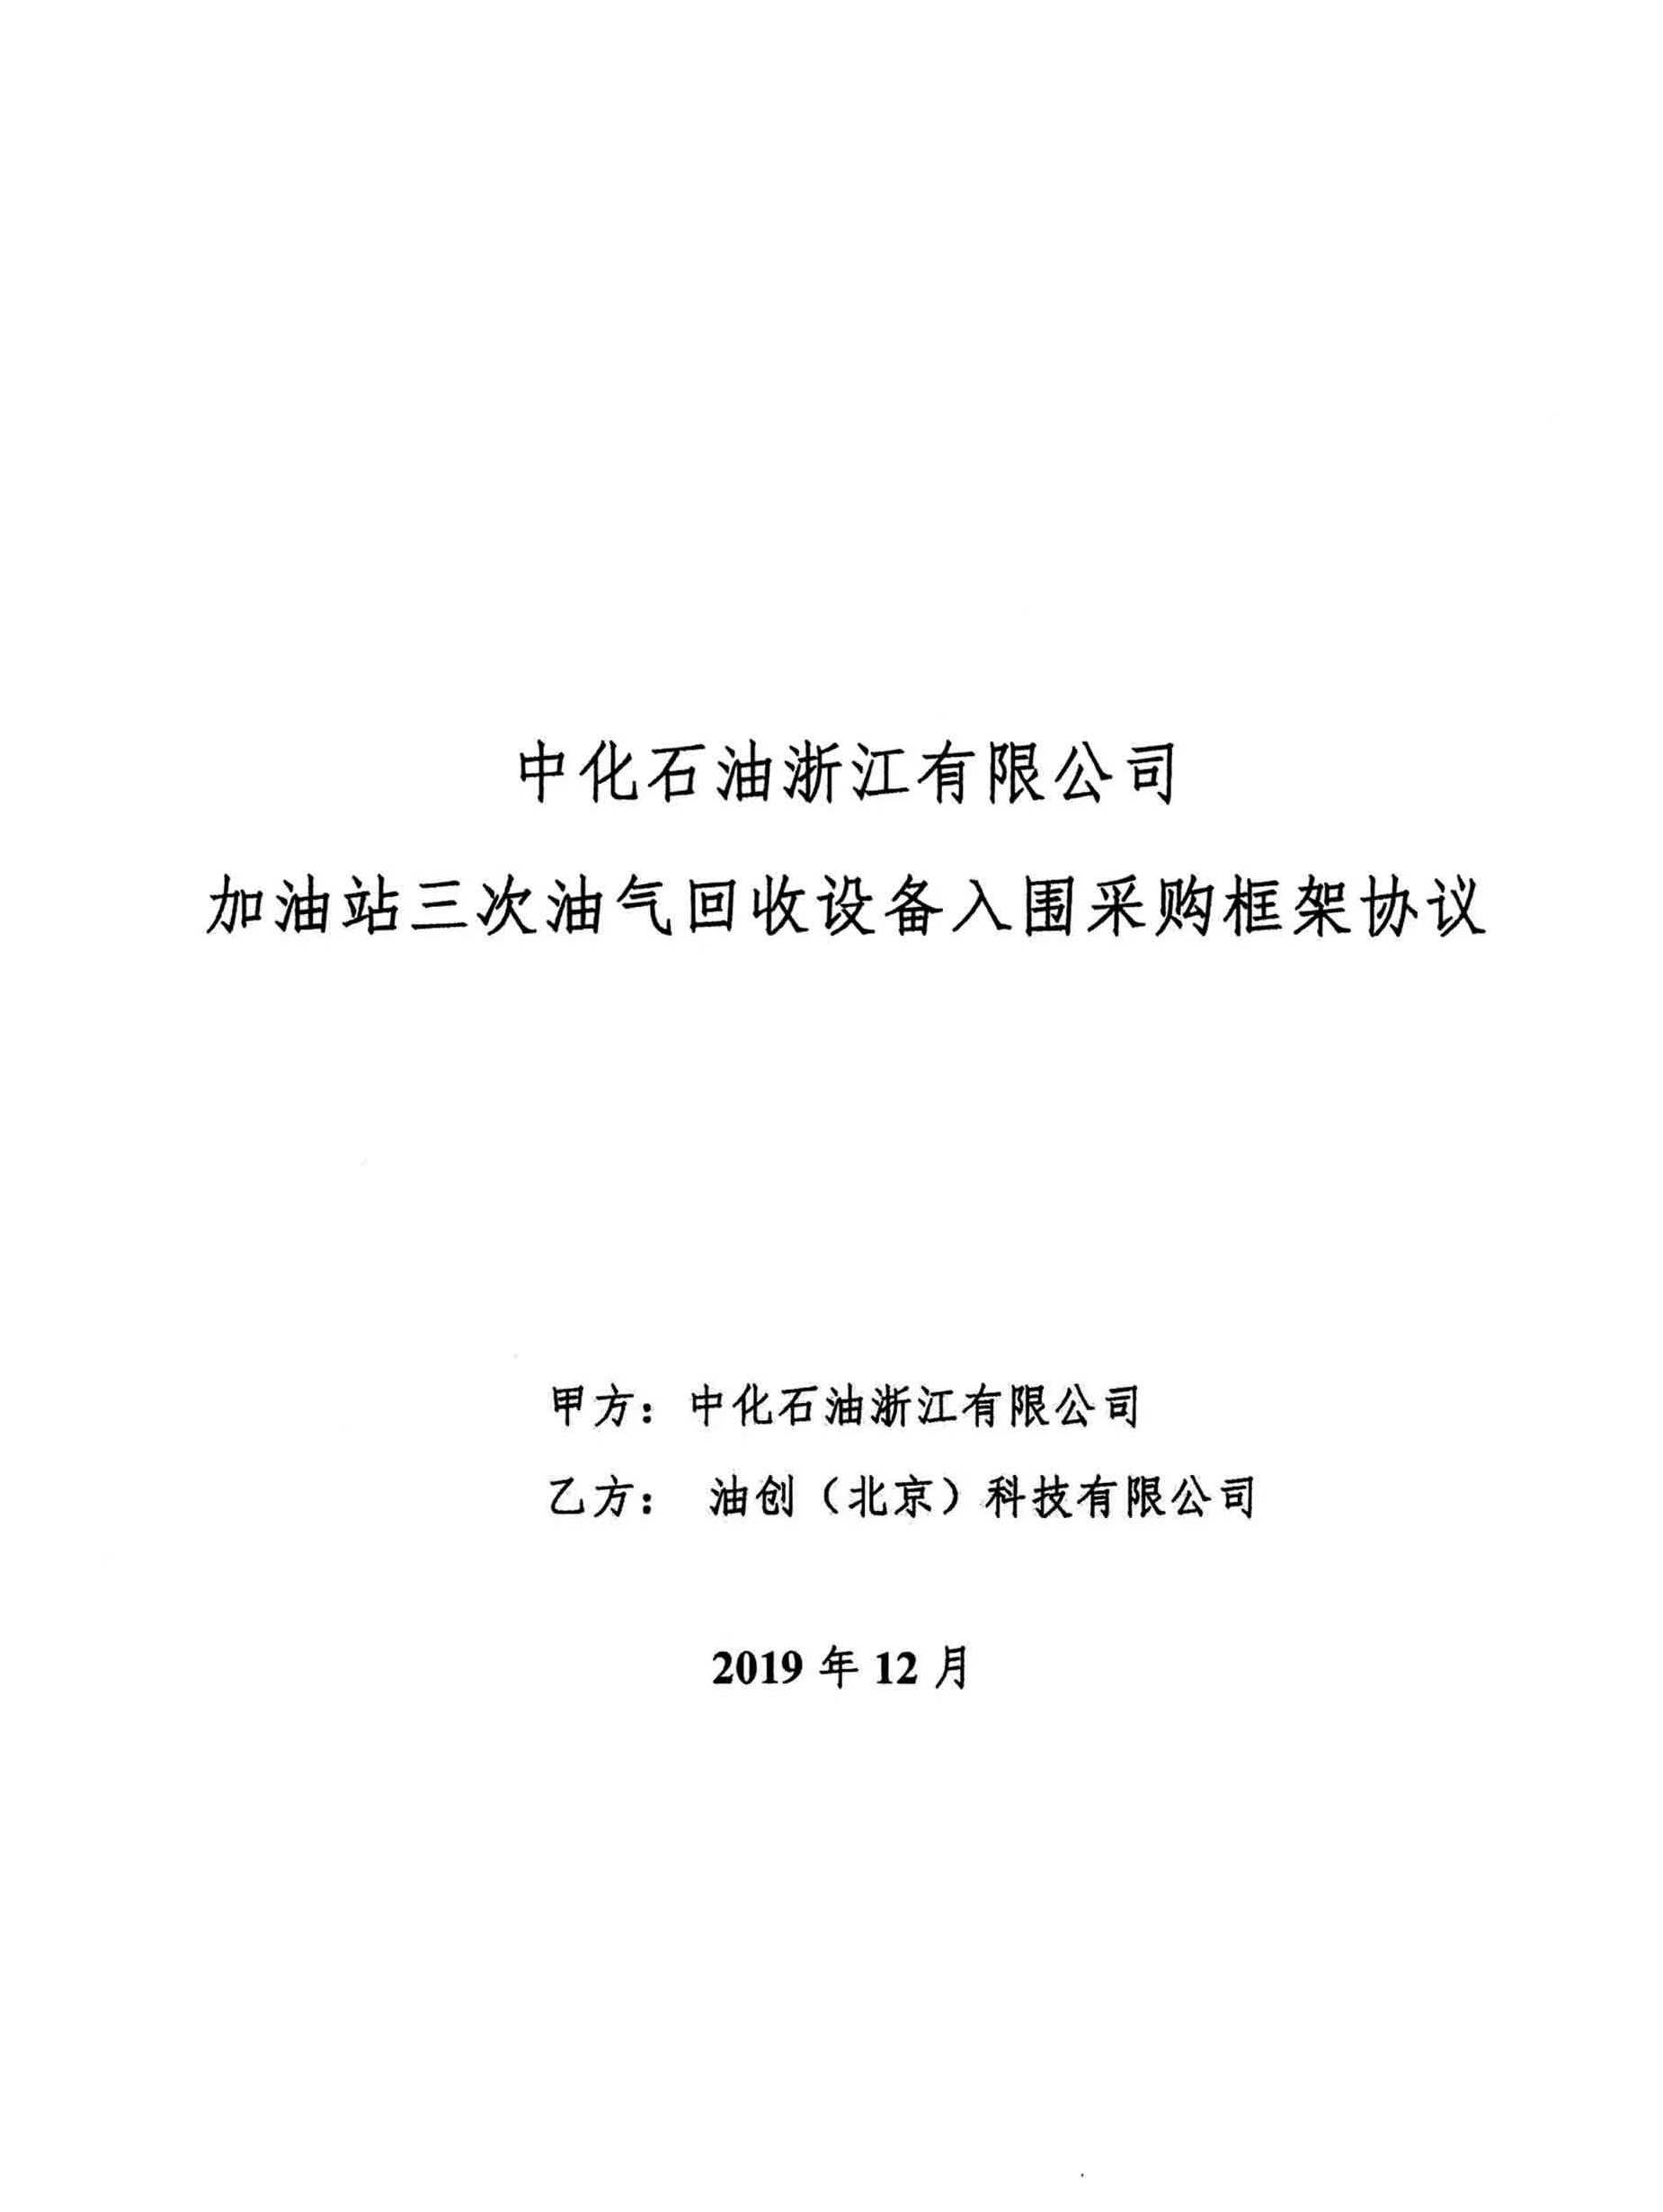 中化石油浙江框架协议